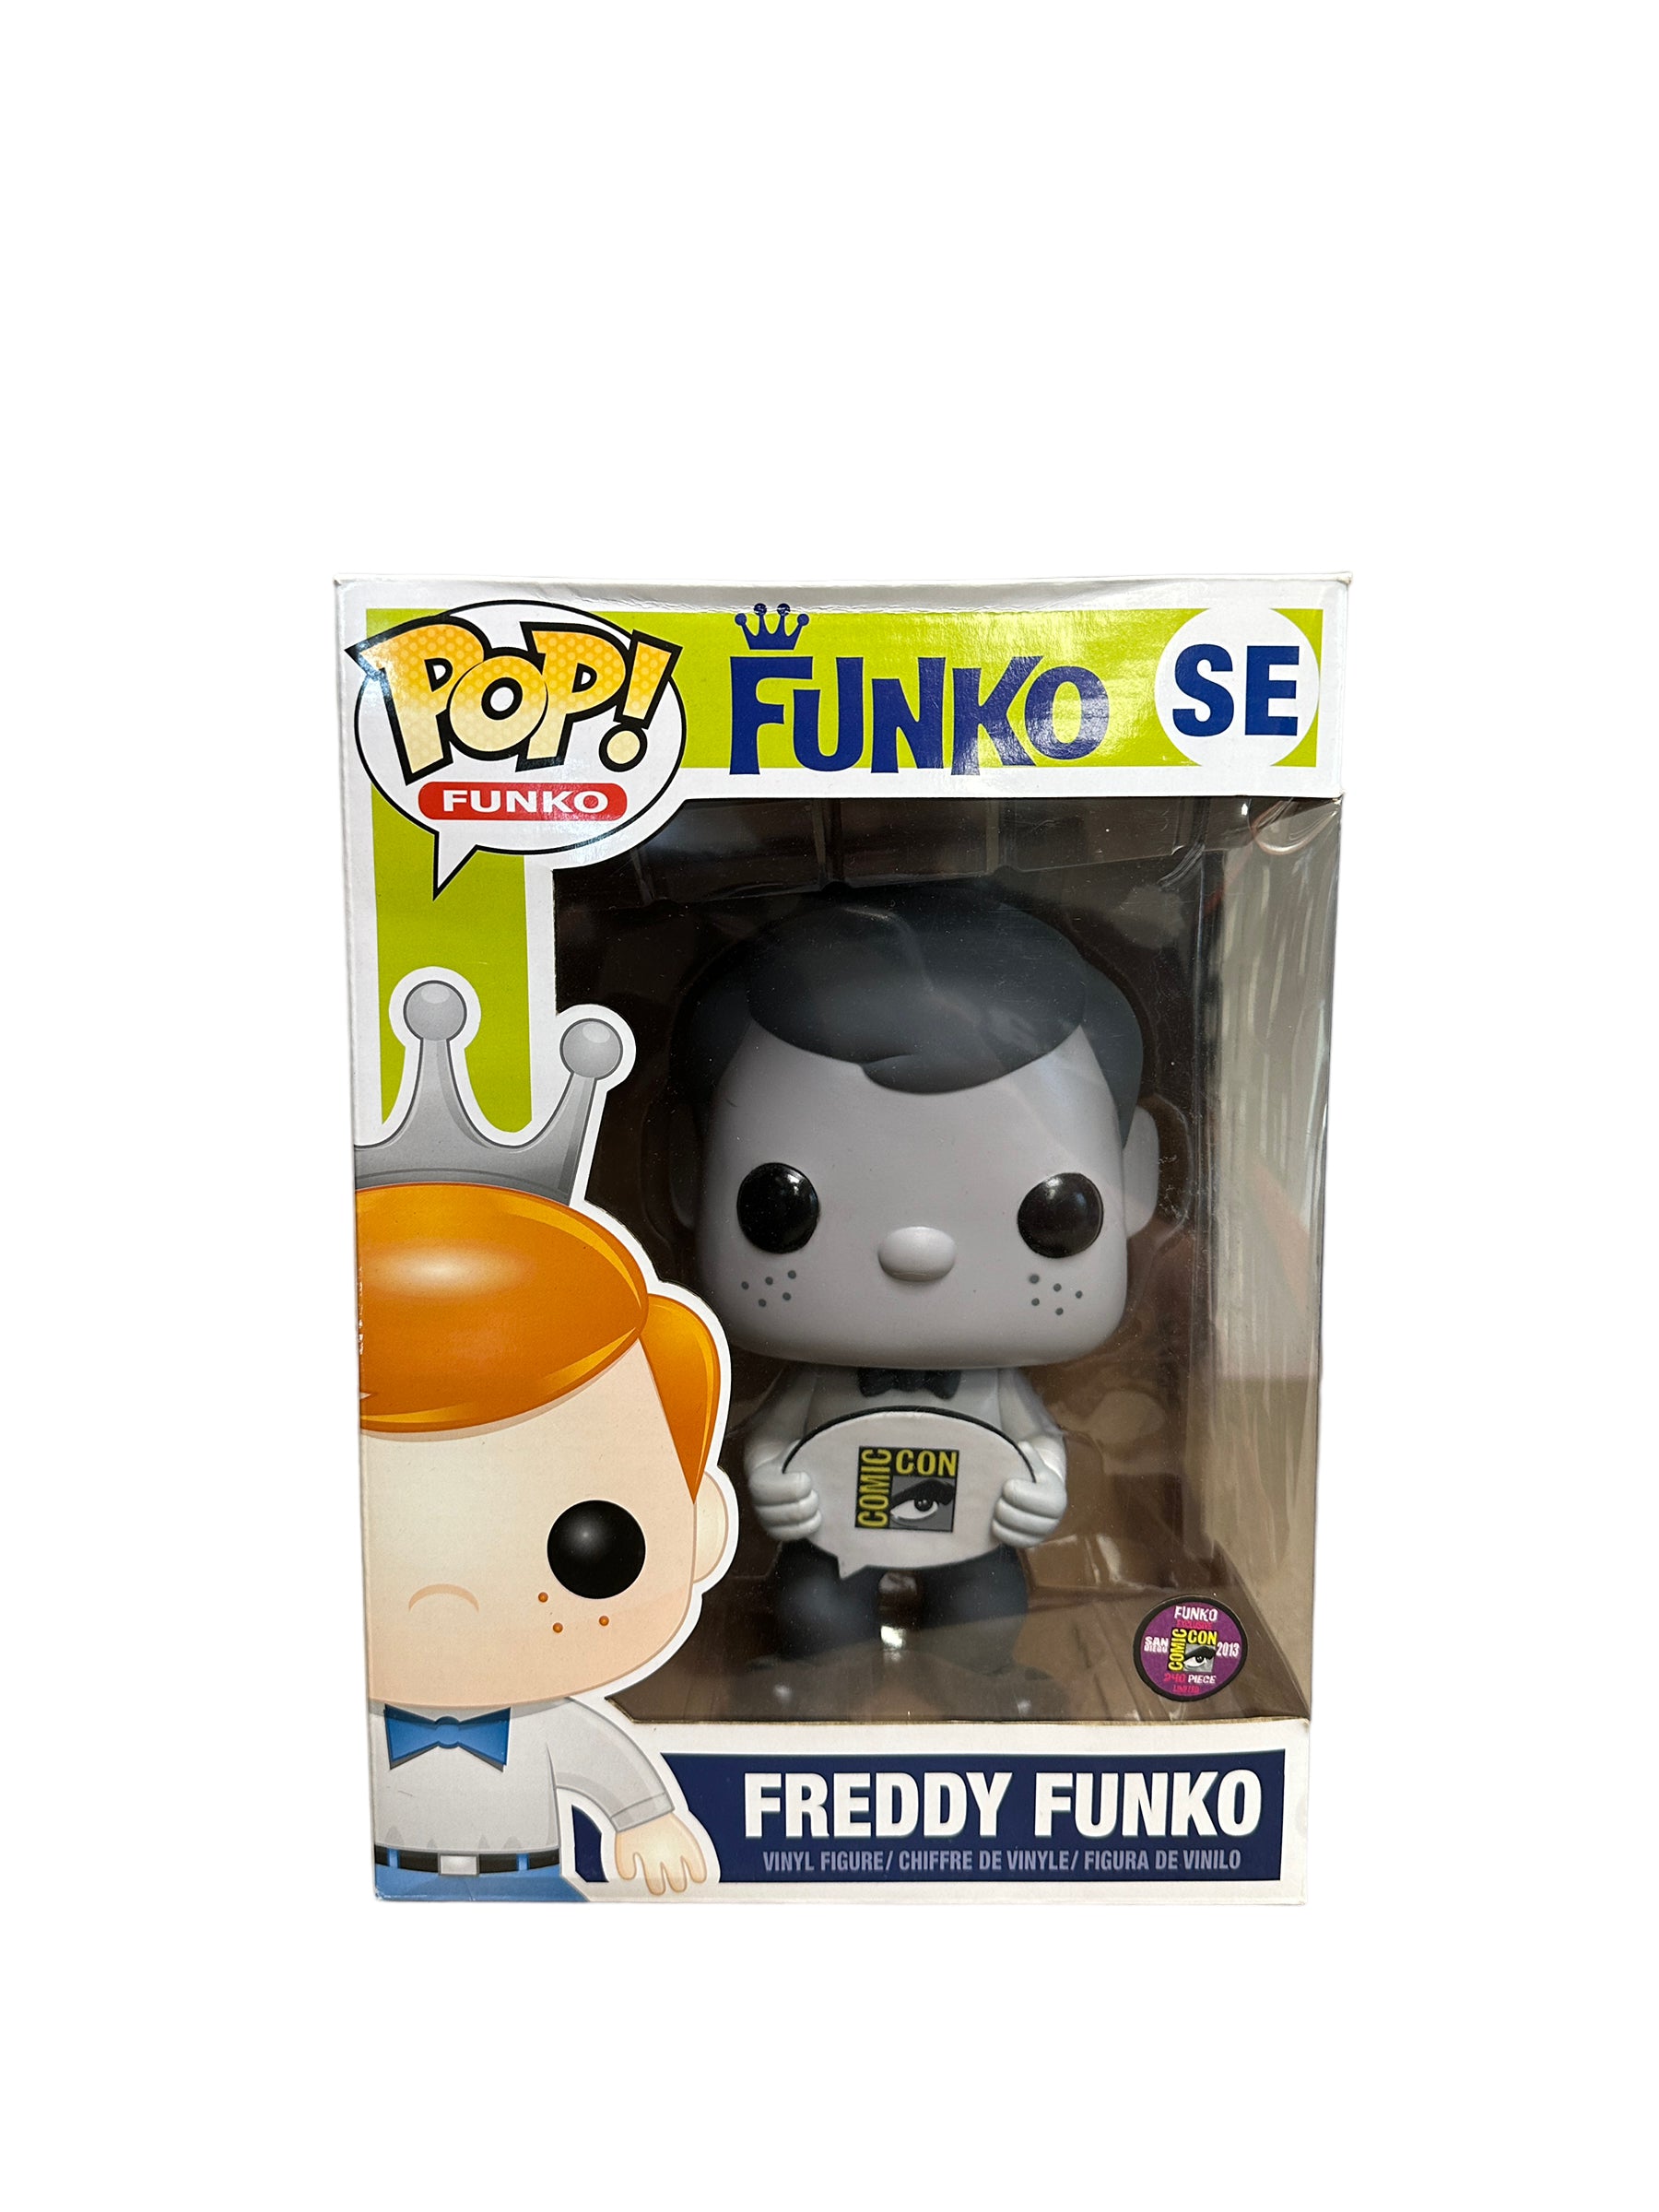 Freddy Funko Black & White 9" Funko Pop! - SDCC 2013 Exclusive LE240 Pcs - Condition 7/10